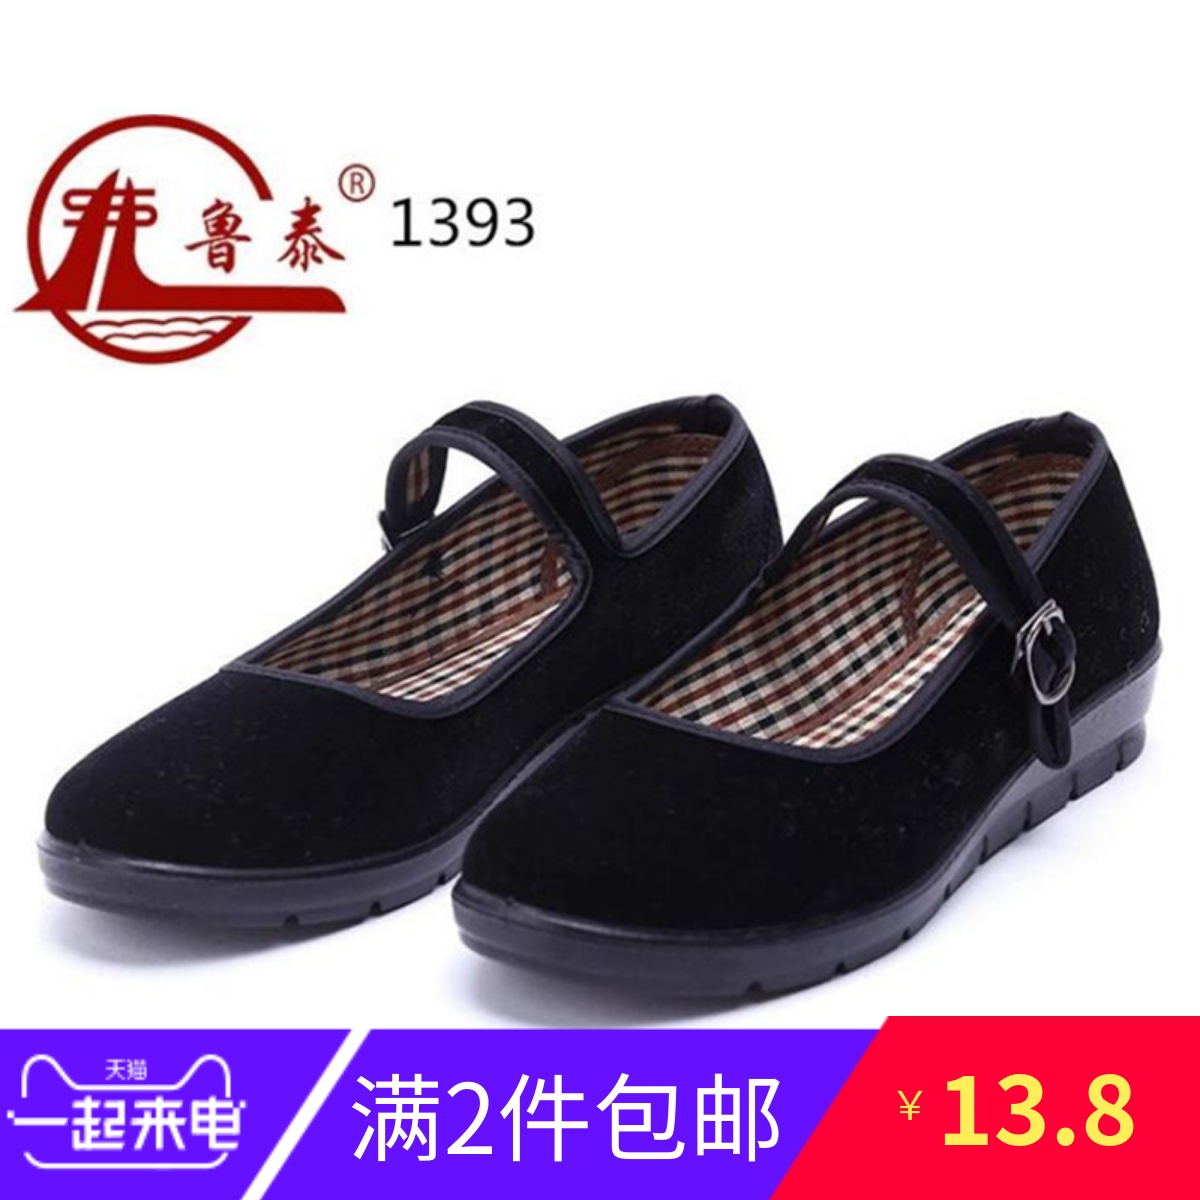 老北京布鞋工作单鞋女平底坡跟松糕一字带酒店上班礼仪舞蹈黑布鞋